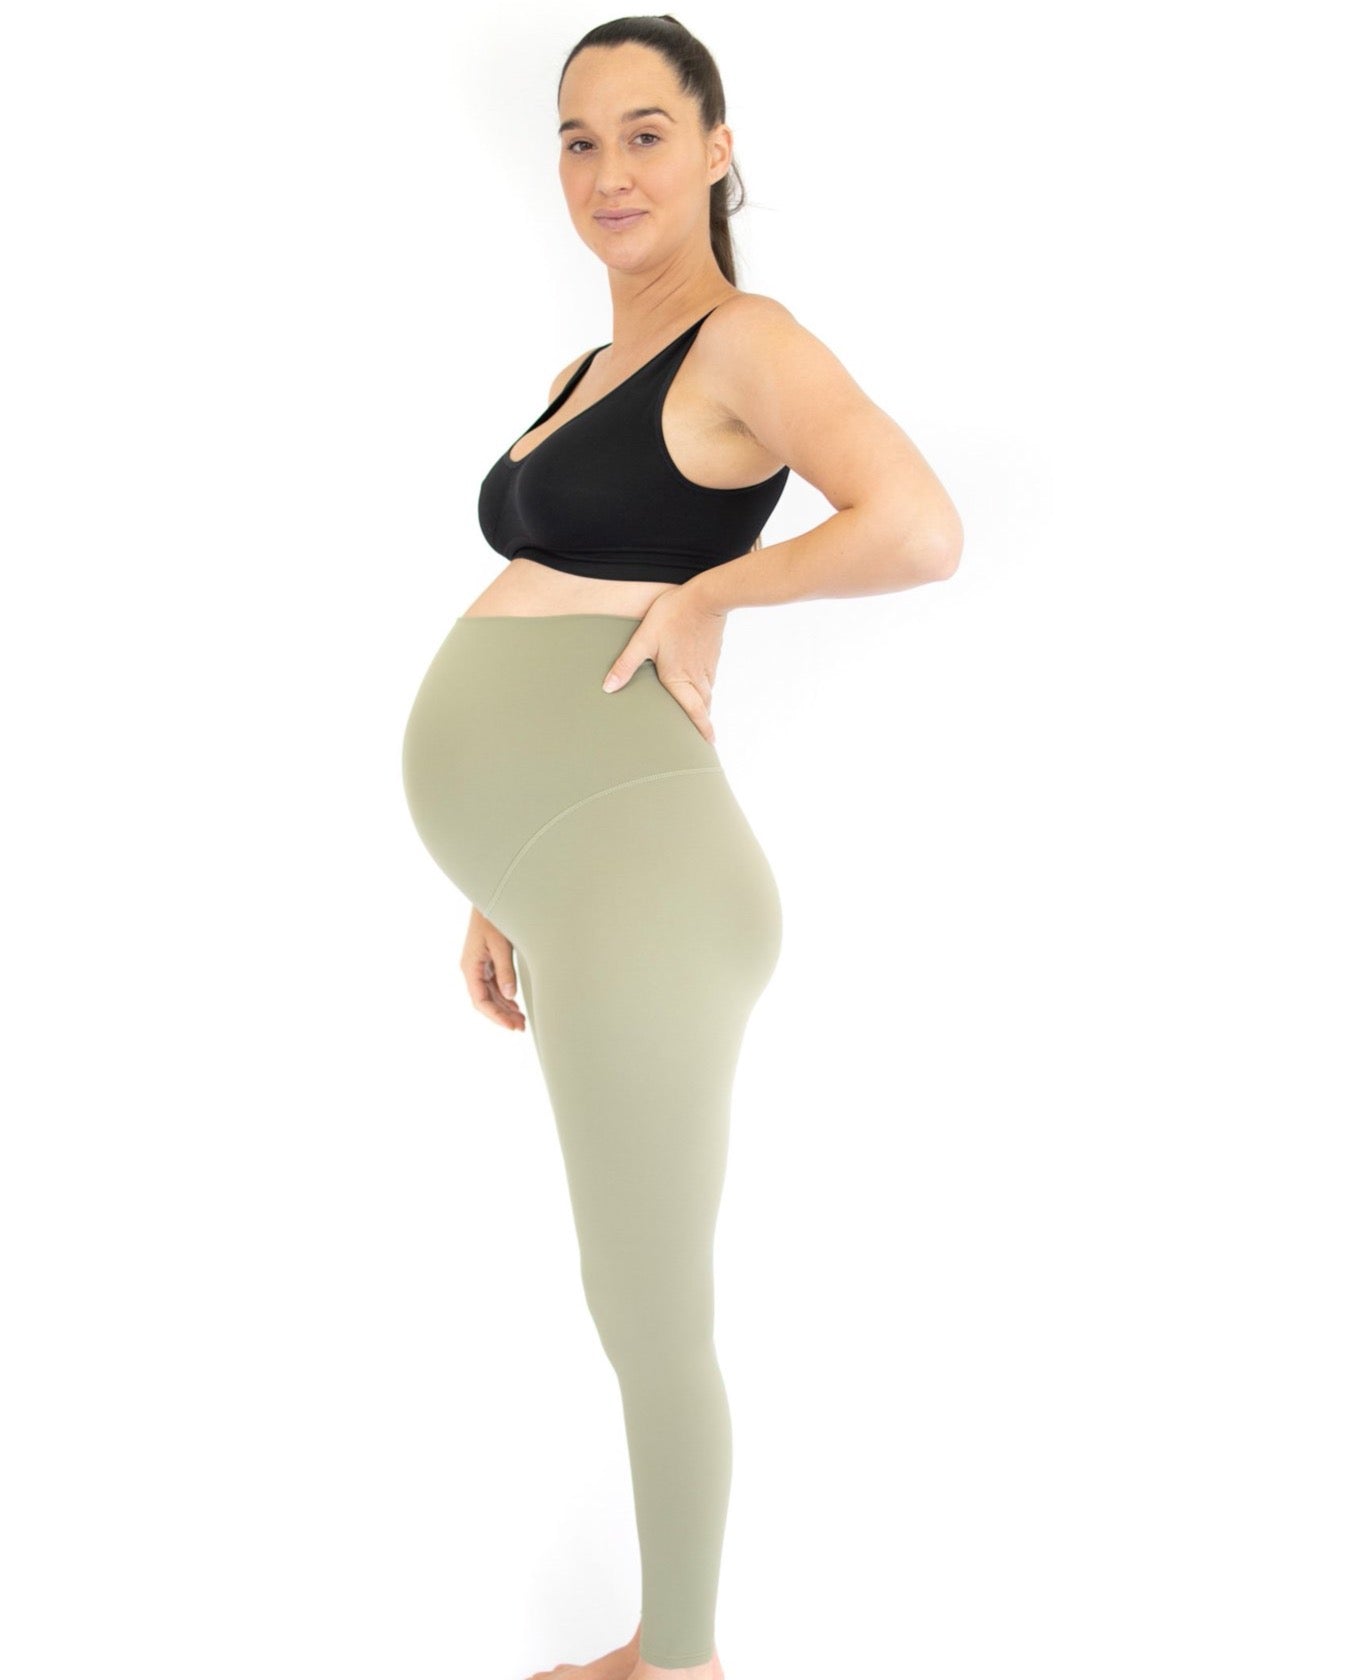 Emama Maternity Leggings - Olive - Full Length